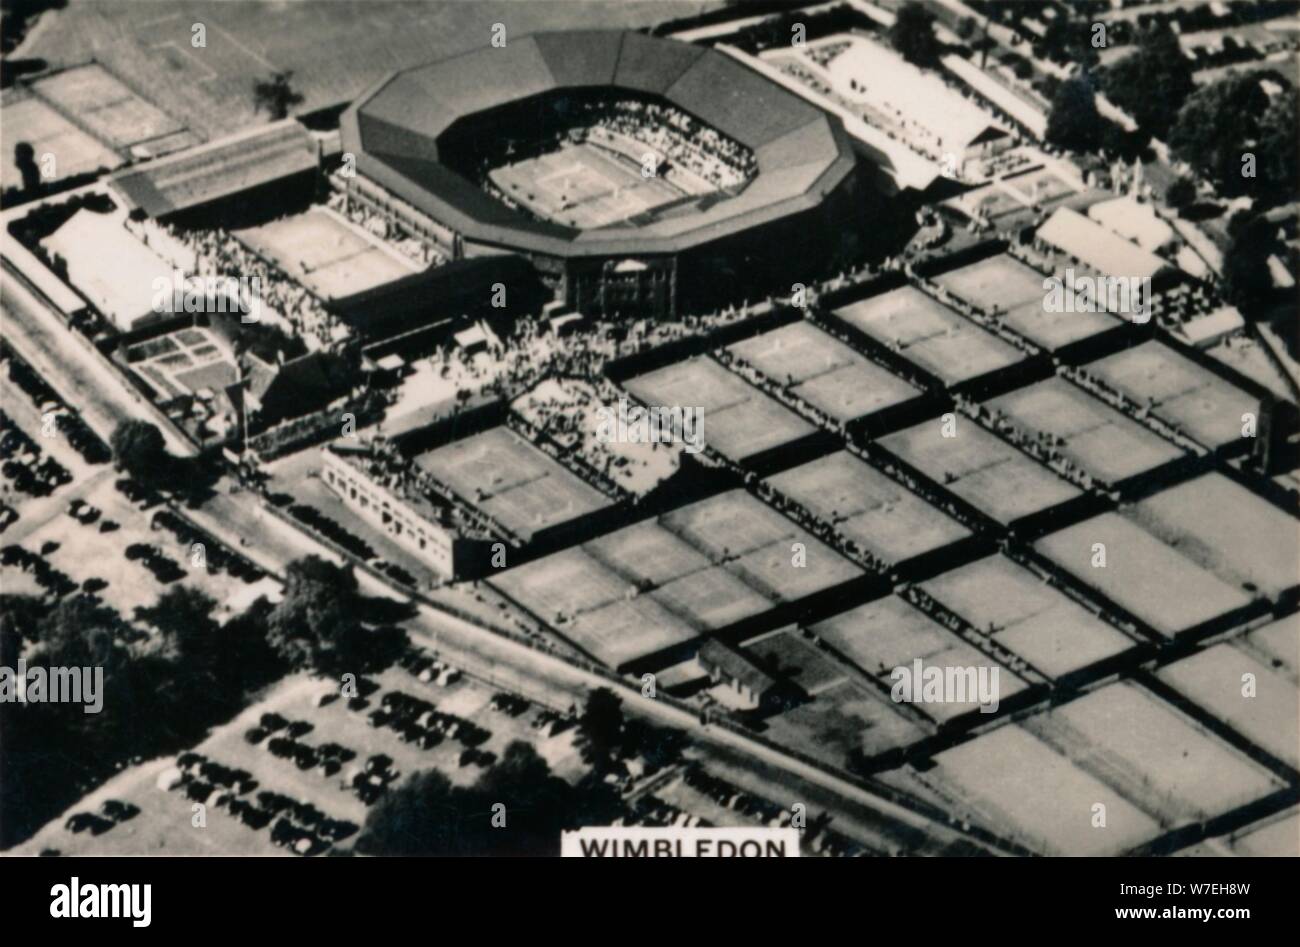 Vue aérienne de Wimbledon, 1939. Artiste : Inconnu Banque D'Images